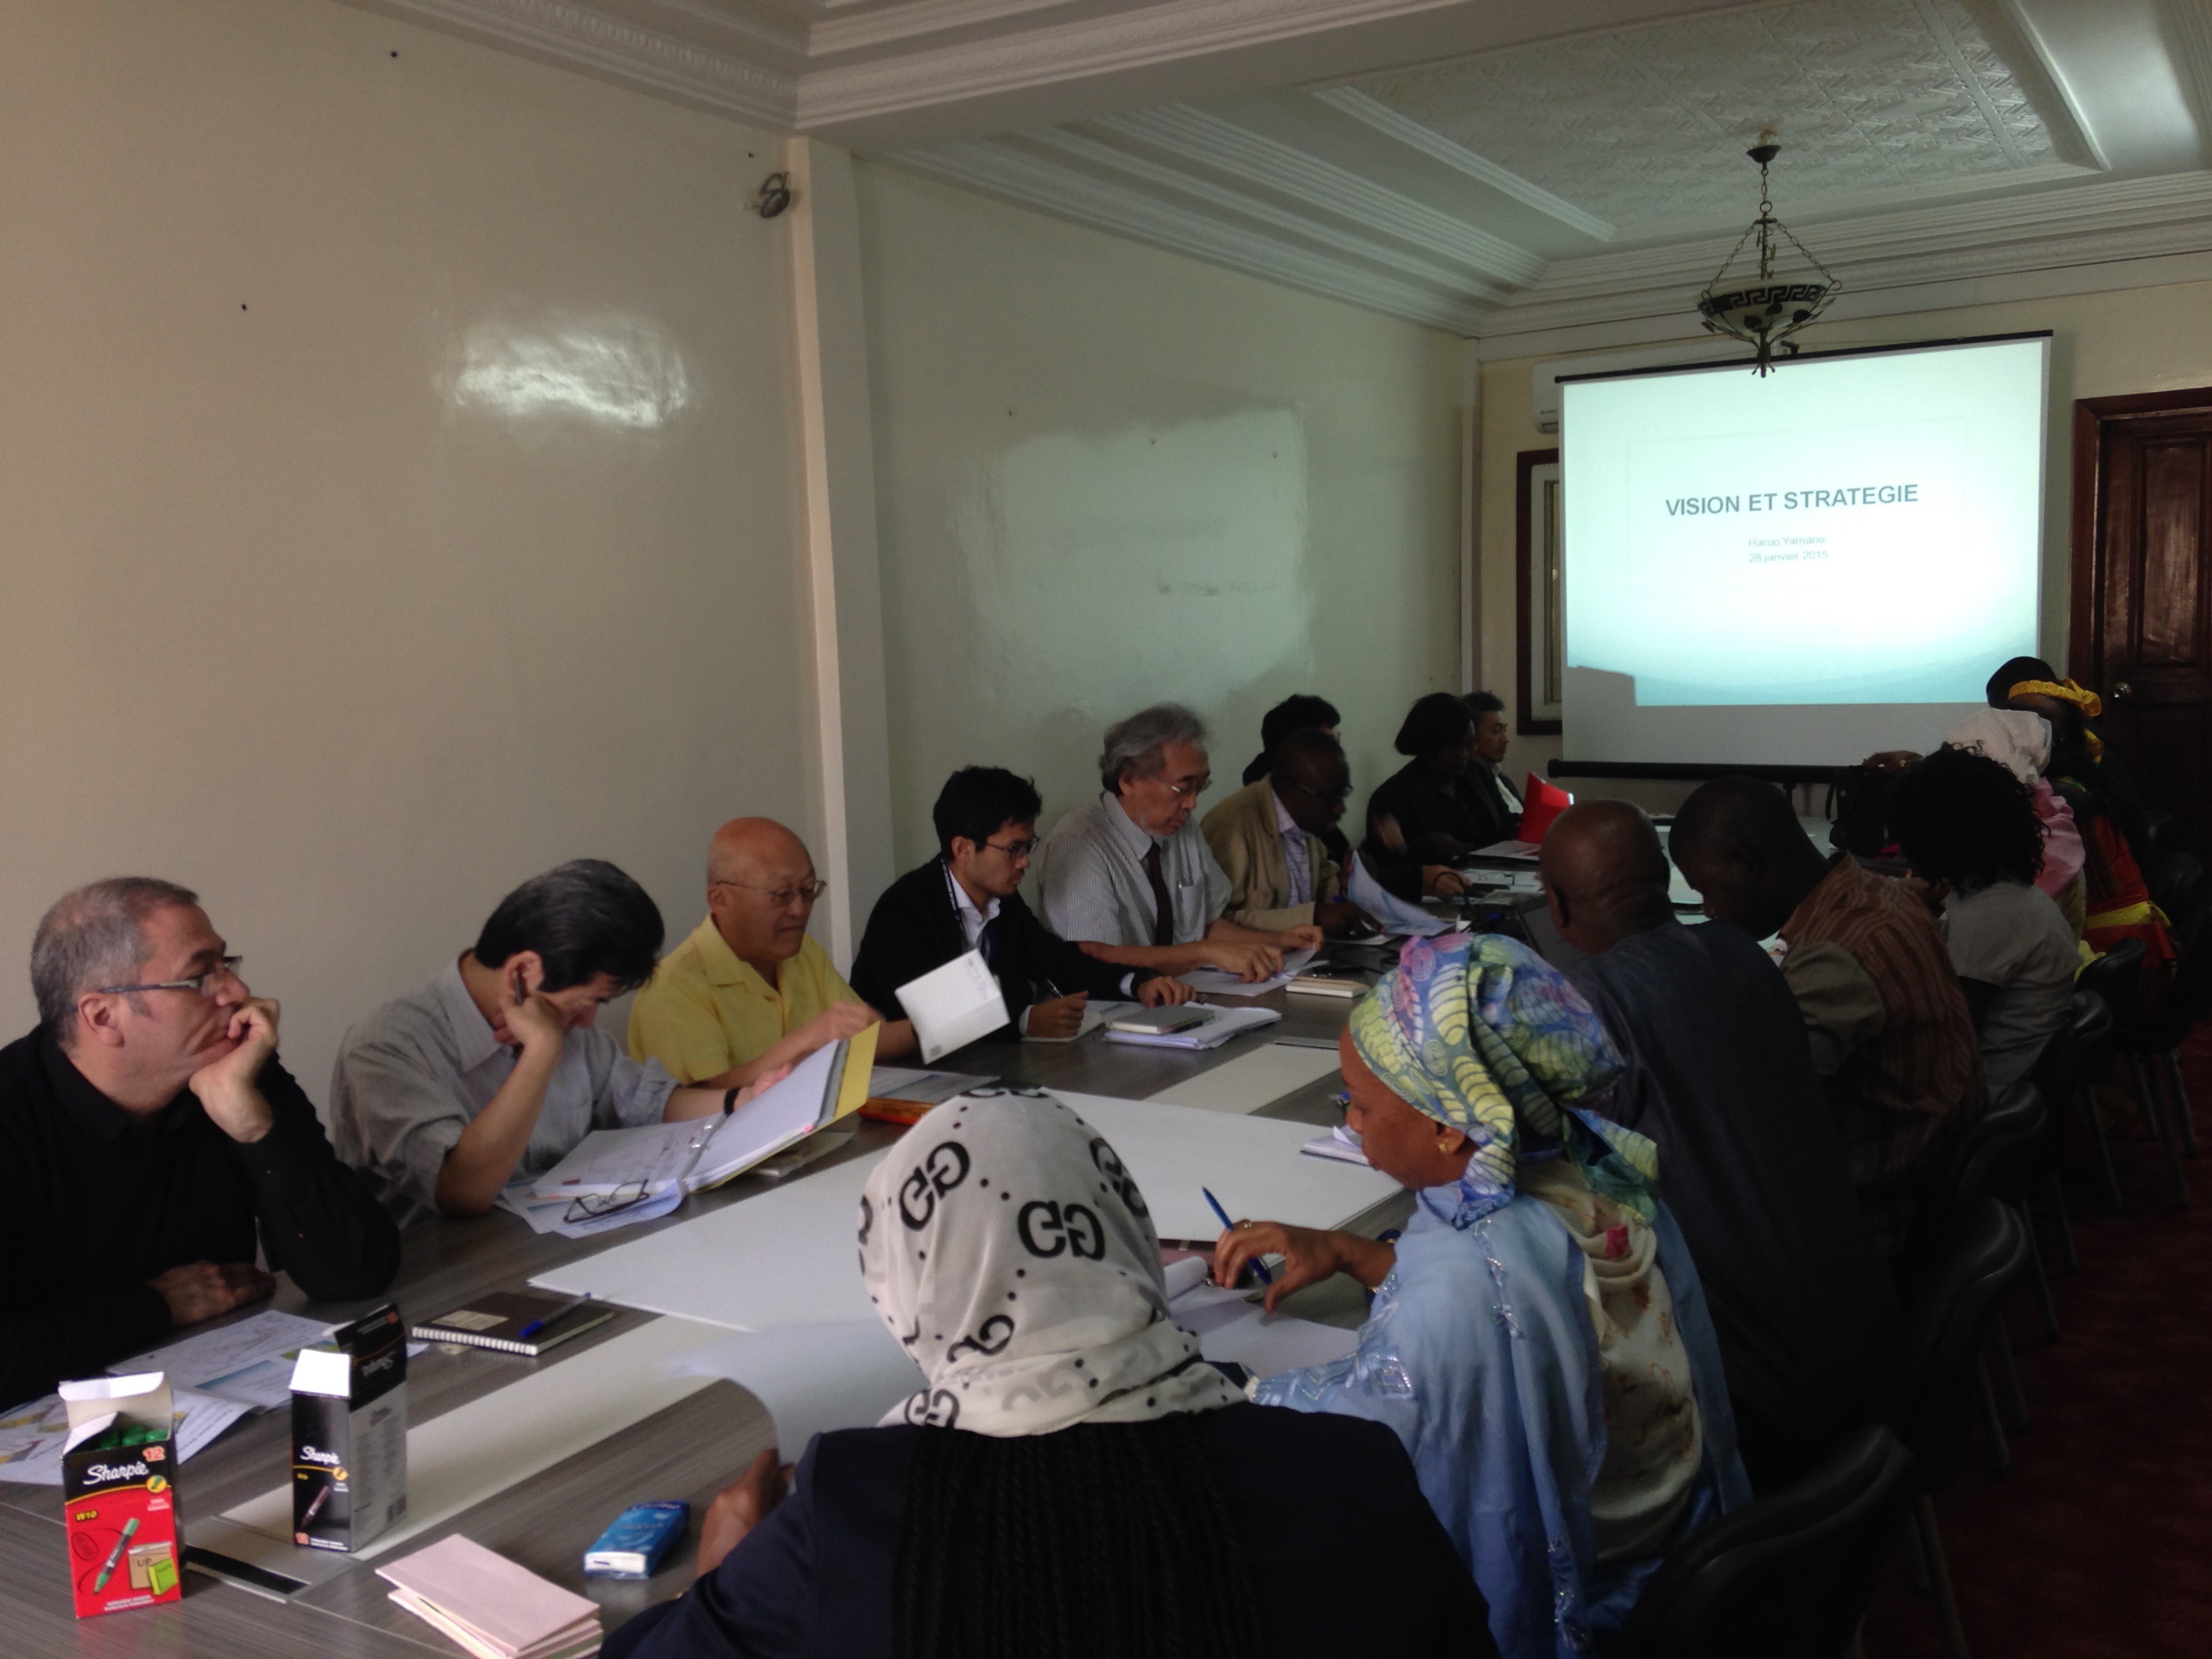 セネガル政府職員との定例会議。セネガル政府のカウンタパートと調査団による定例会議は、プロジェクト期間を通じて毎週開催されました。調査の進捗状況、課題、計画方針などが定例会議で協議されました。